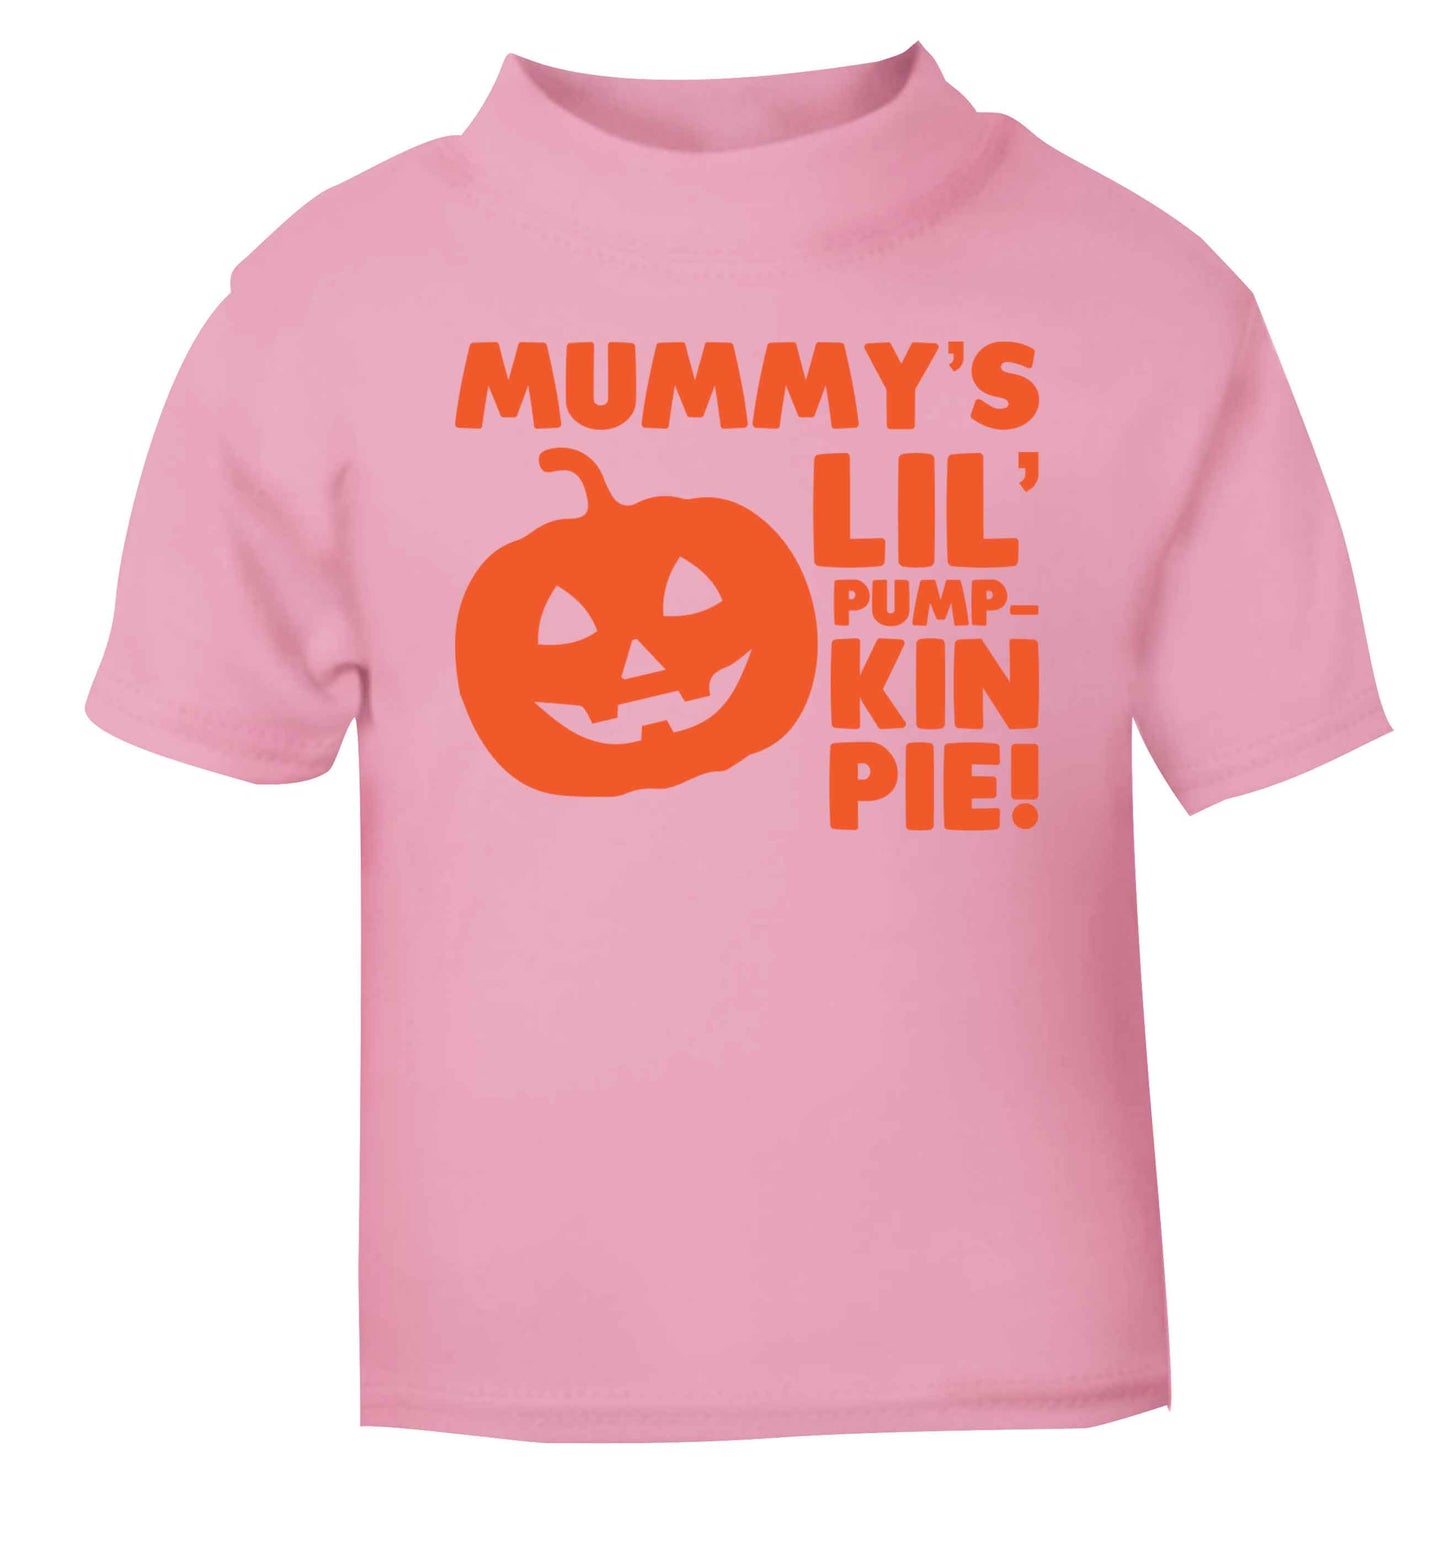 Mummy's lil' pumpkin pie light pink baby toddler Tshirt 2 Years